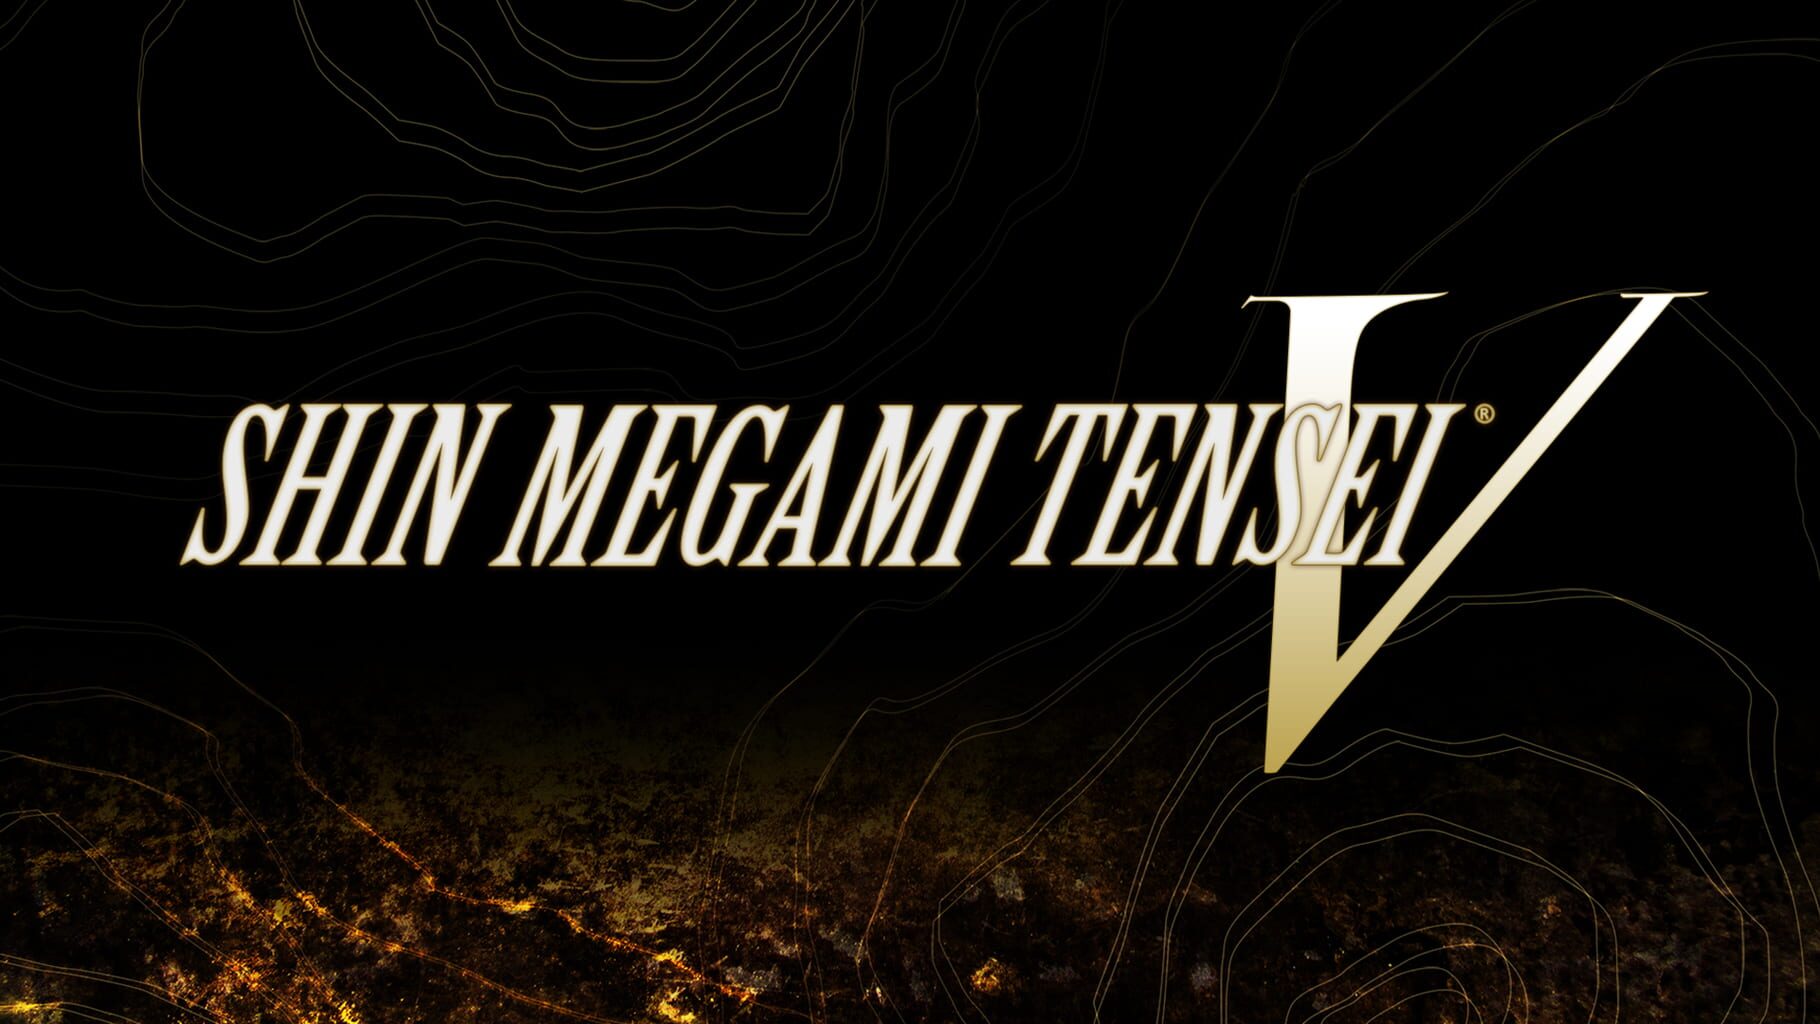 Artwork for Shin Megami Tensei V